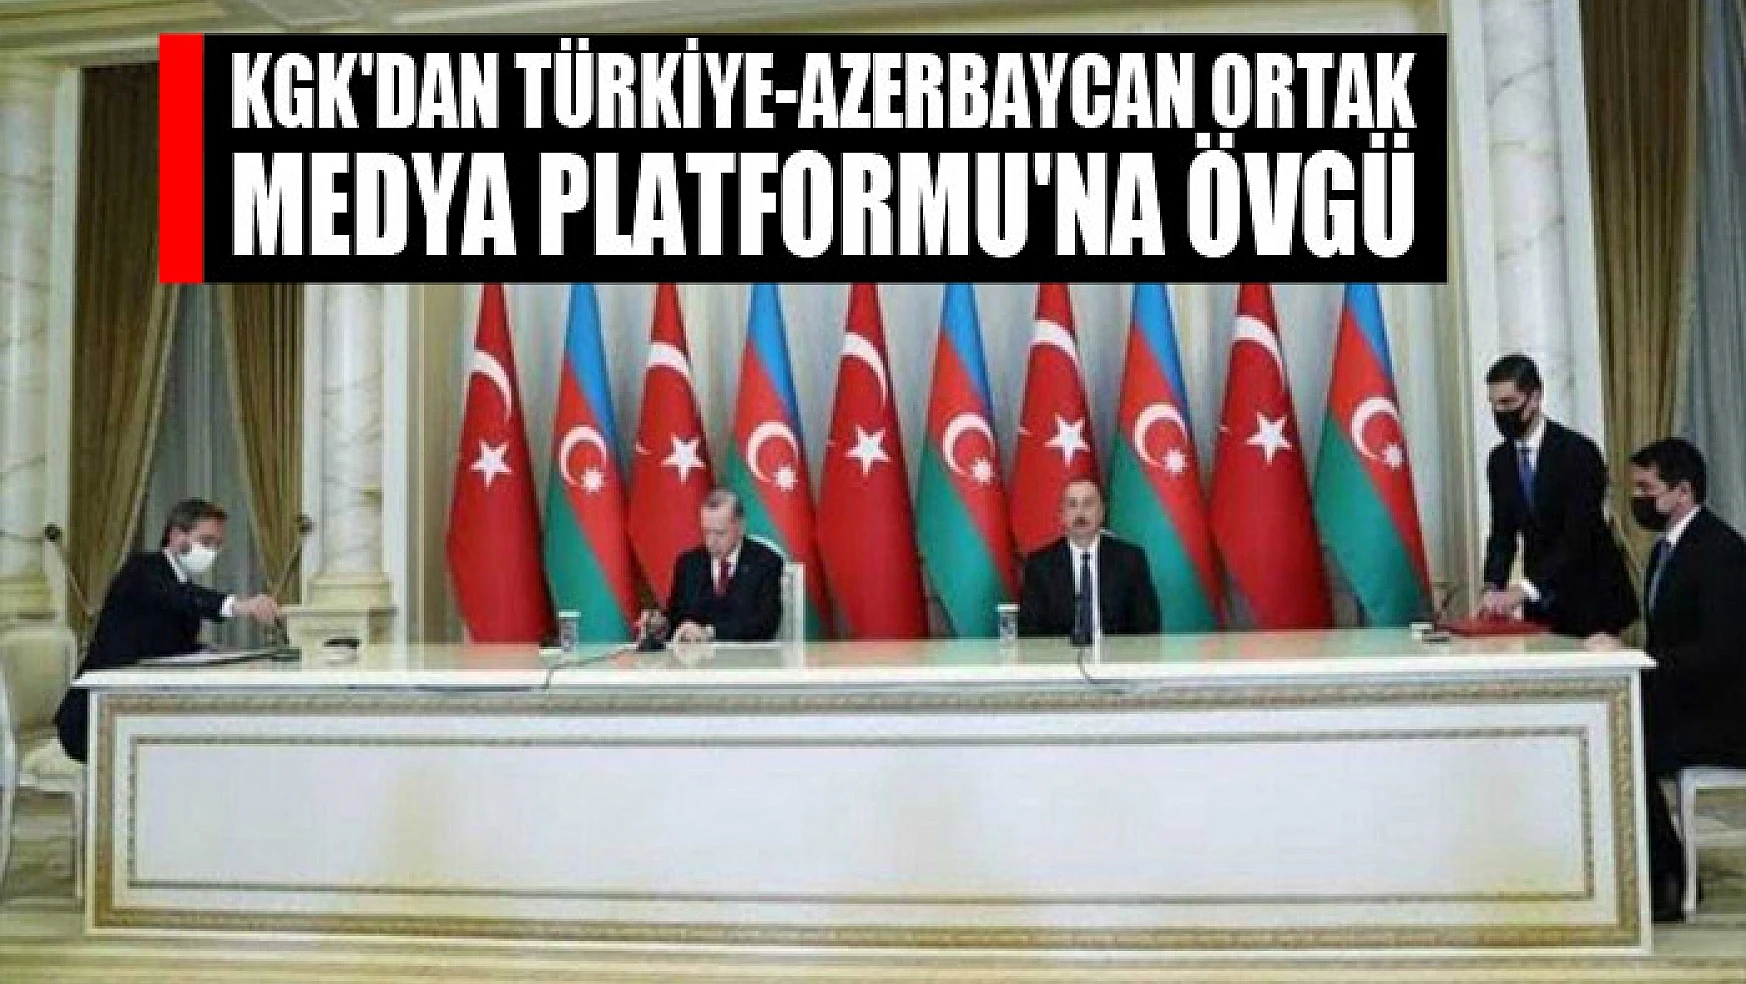 KGK'dan Türkiye-Azerbaycan Ortak Medya Platformu'na övgü